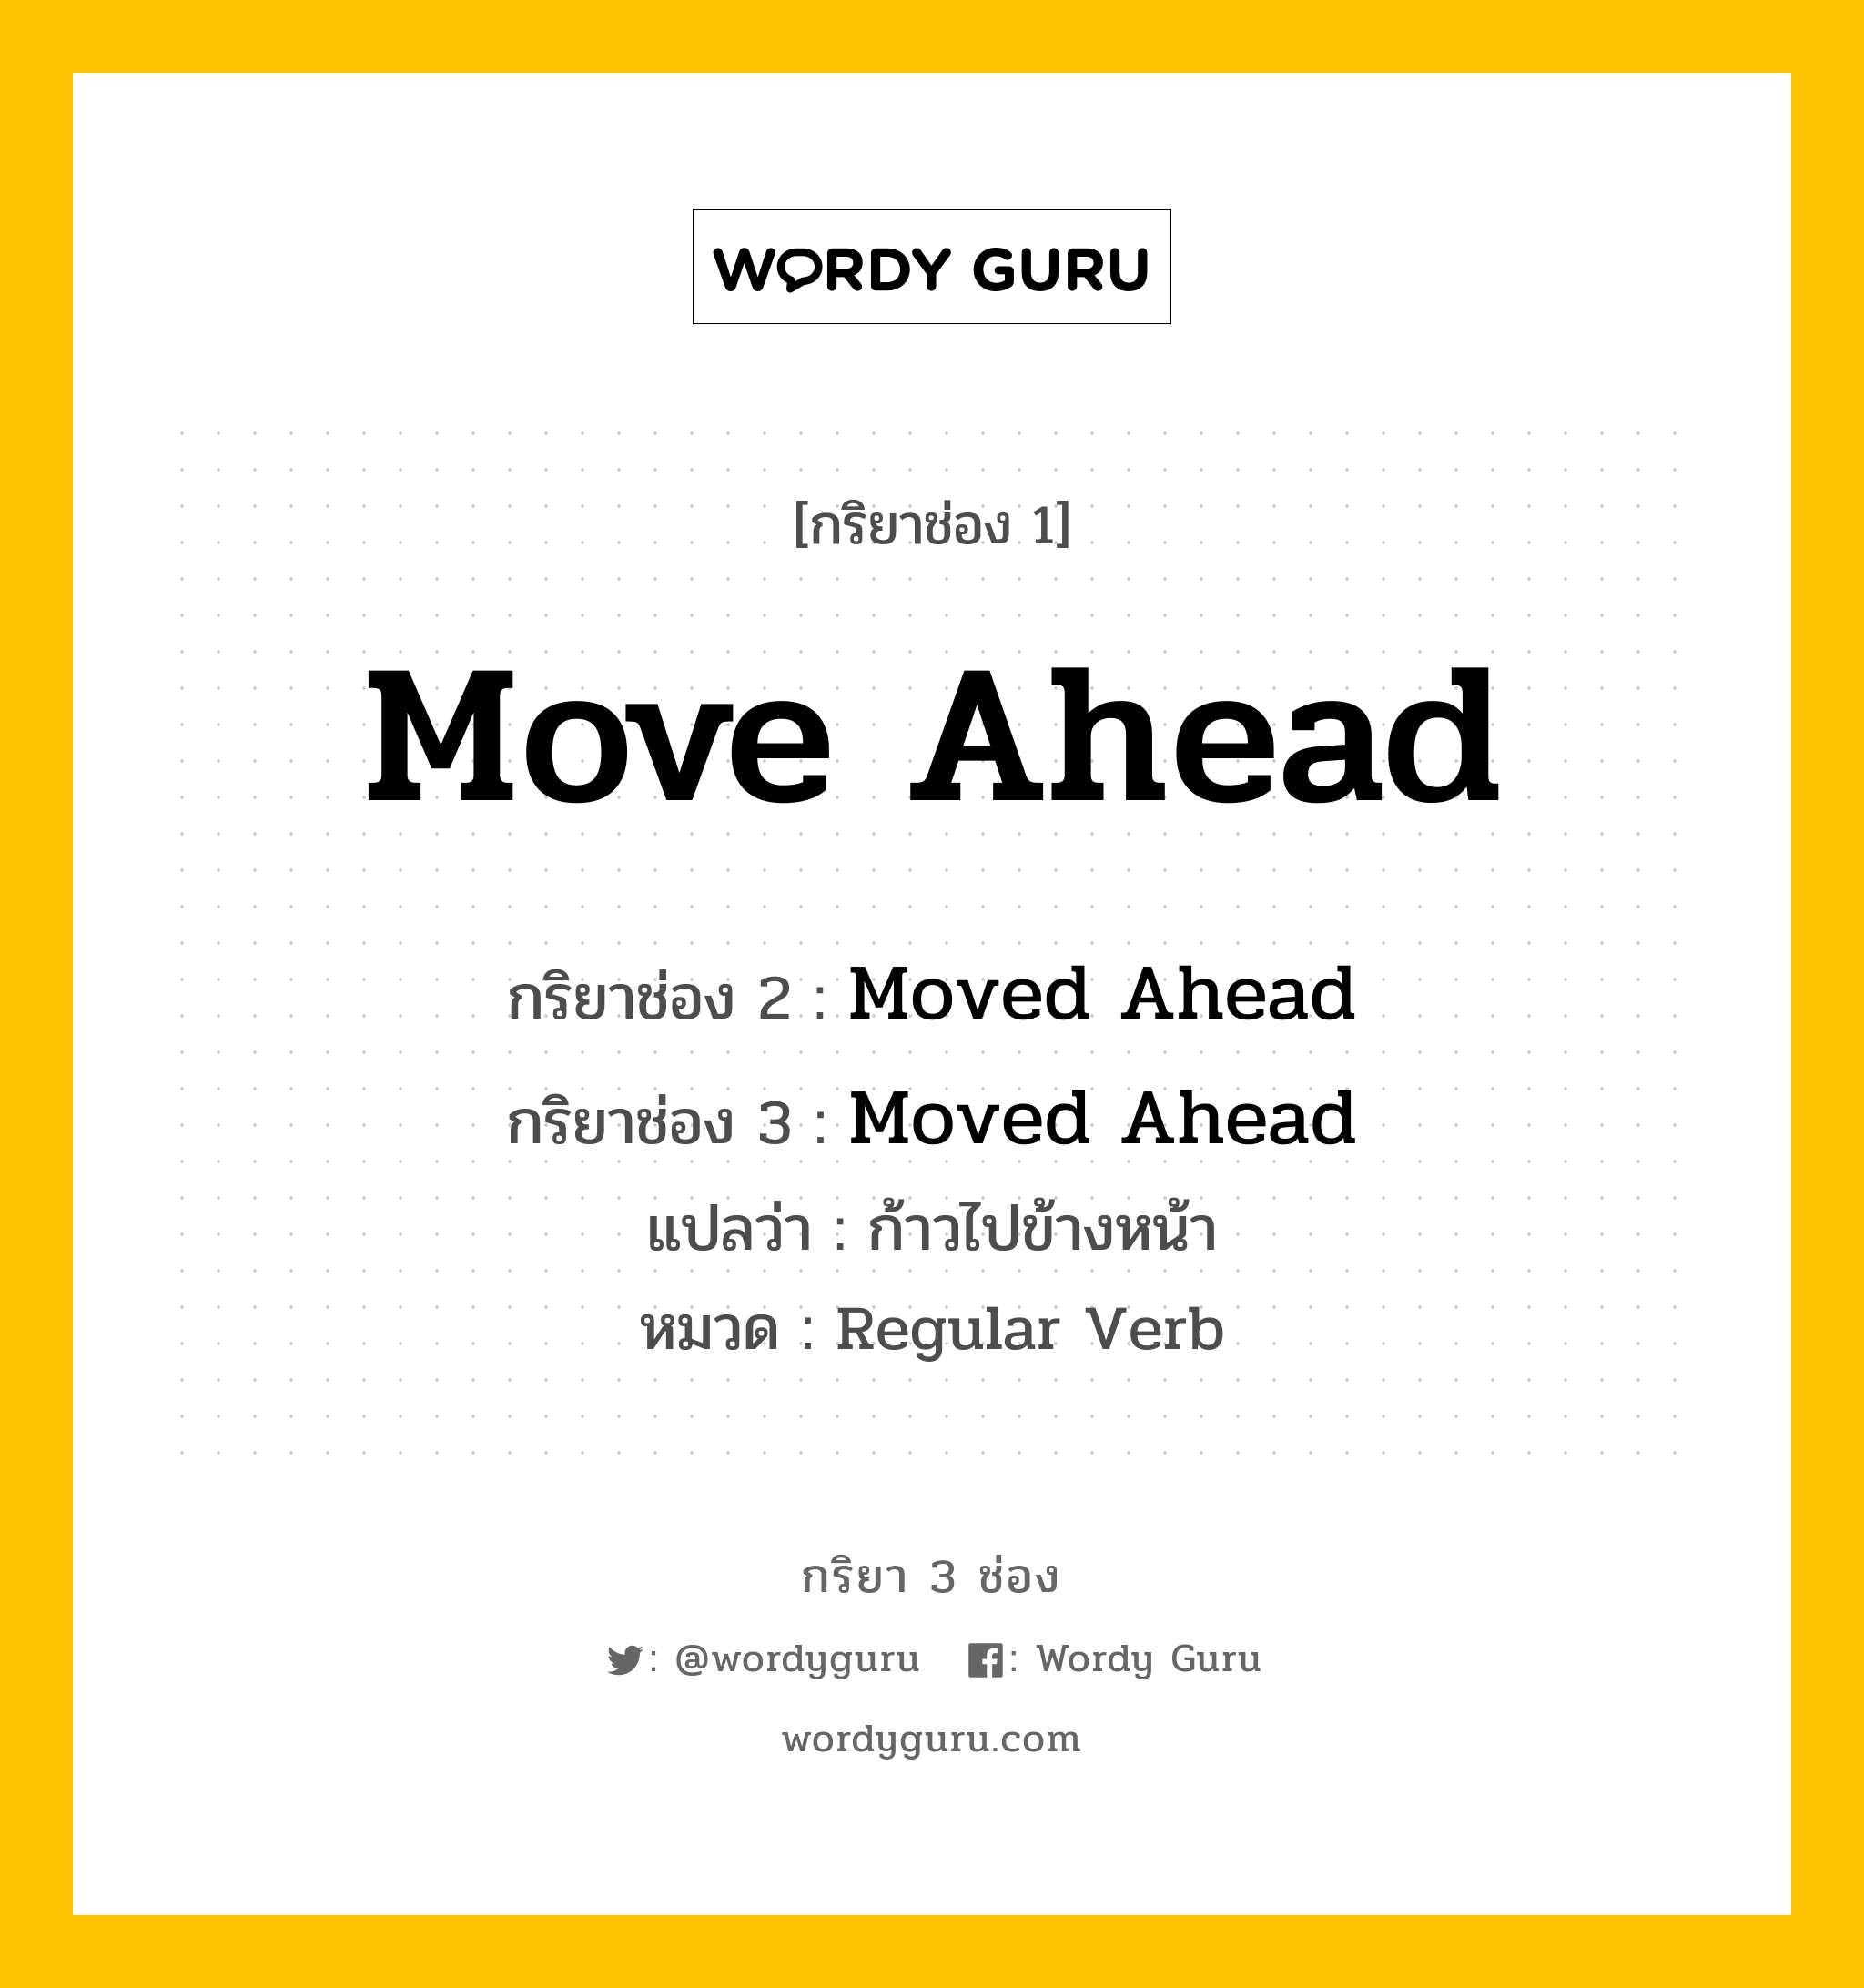 กริยา 3 ช่อง: Move Ahead ช่อง 2 Move Ahead ช่อง 3 คืออะไร, กริยาช่อง 1 Move Ahead กริยาช่อง 2 Moved Ahead กริยาช่อง 3 Moved Ahead แปลว่า ก้าวไปข้างหน้า หมวด Regular Verb หมวด Regular Verb